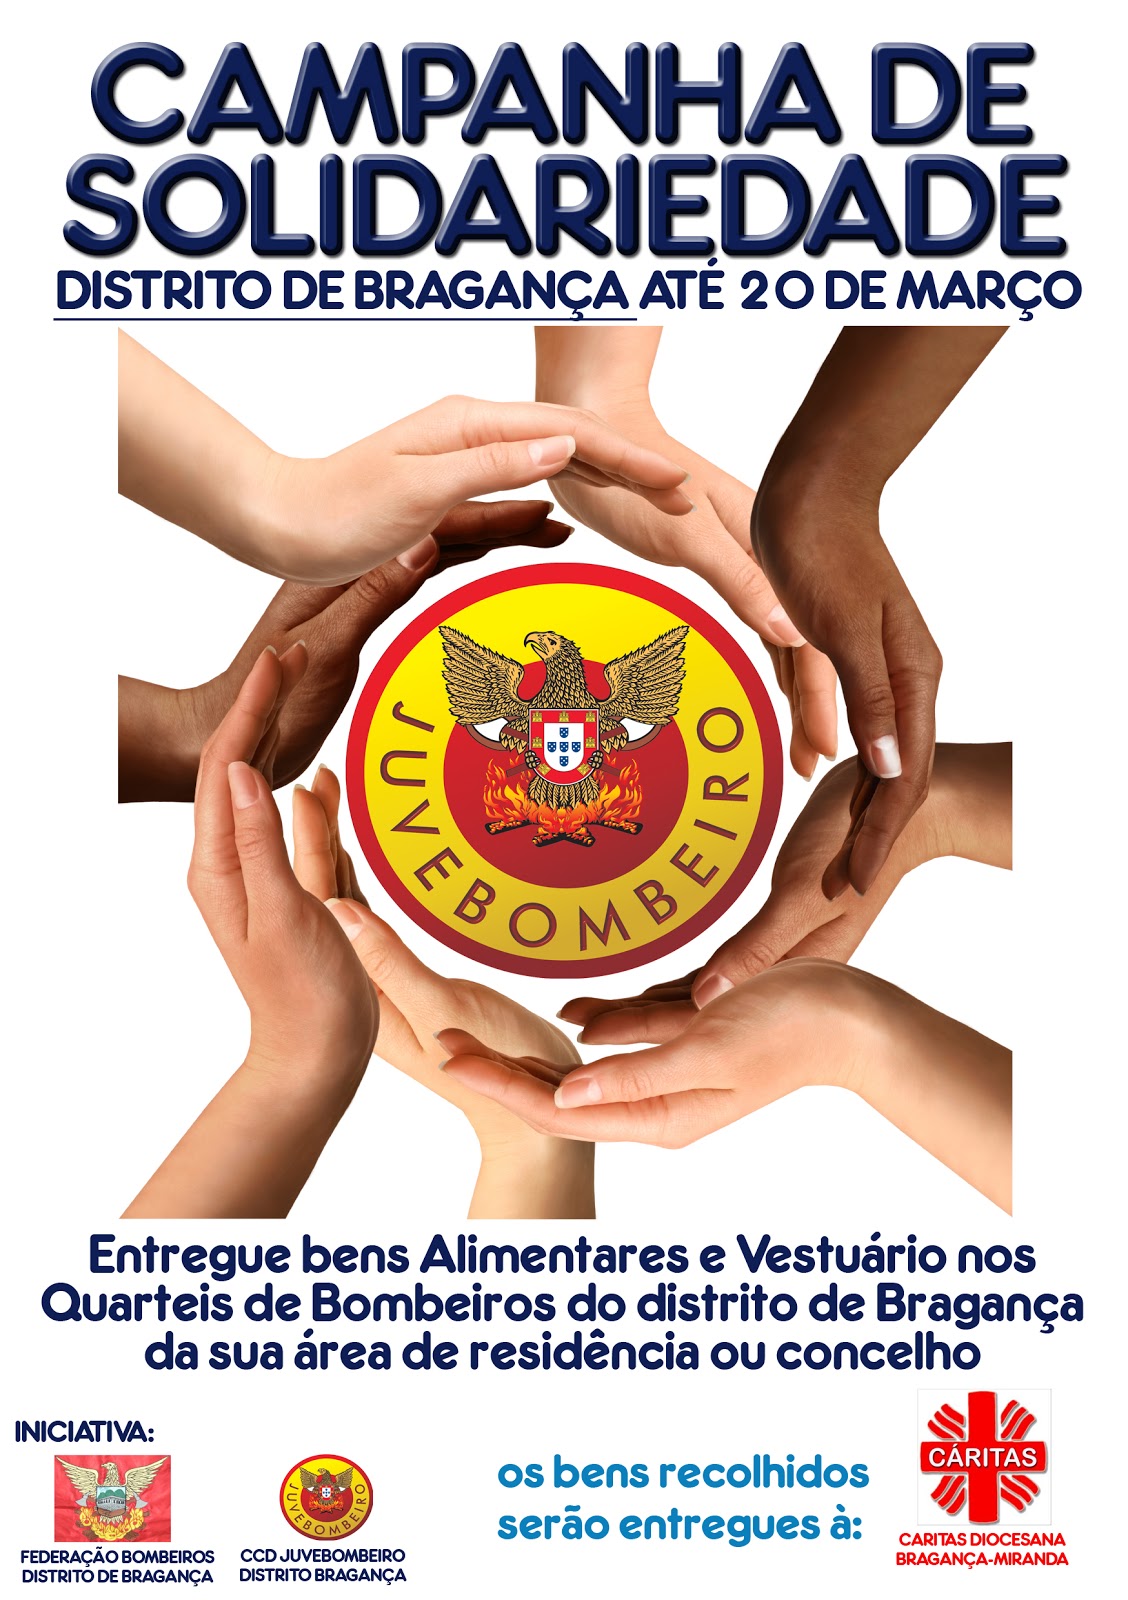 Corpo de Bombeiros de Bragança: Campanha Solidária 